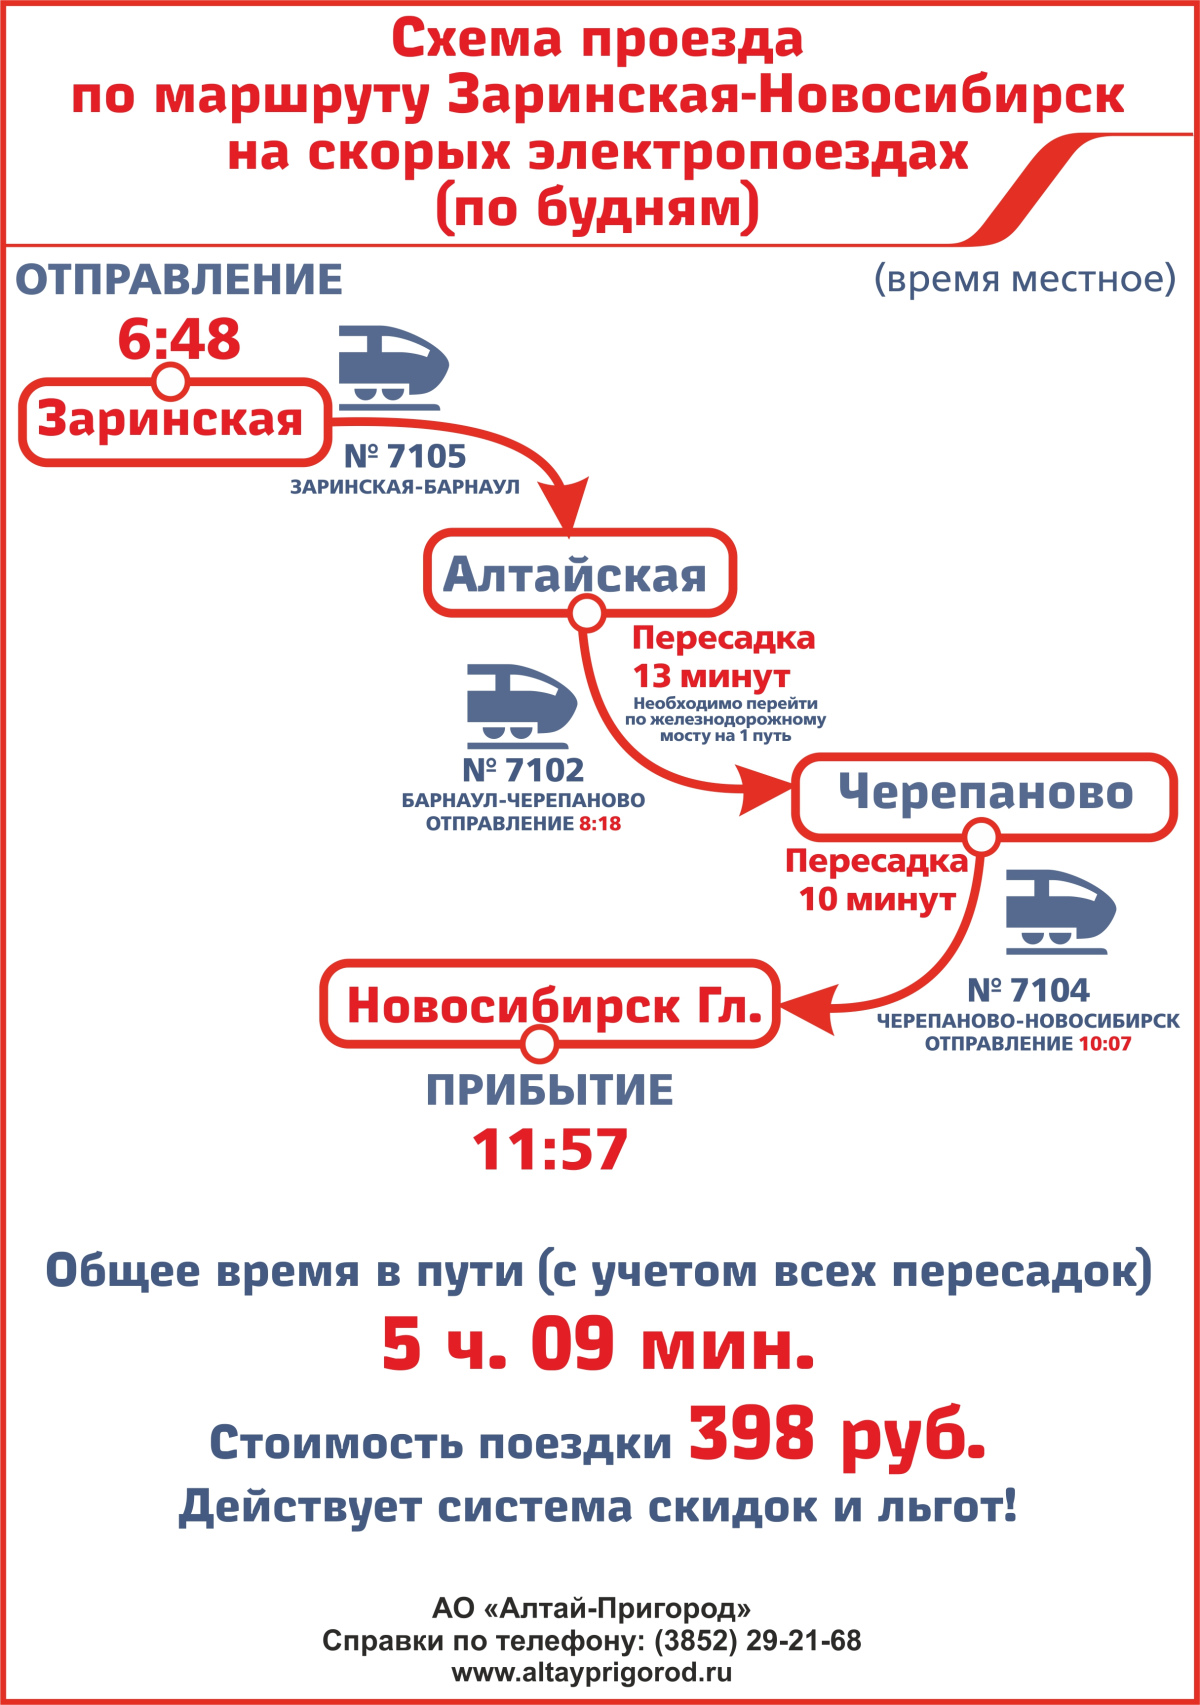 Схема проезда по маршруту Заринская-Новосибирск «Алтай-Пригород»